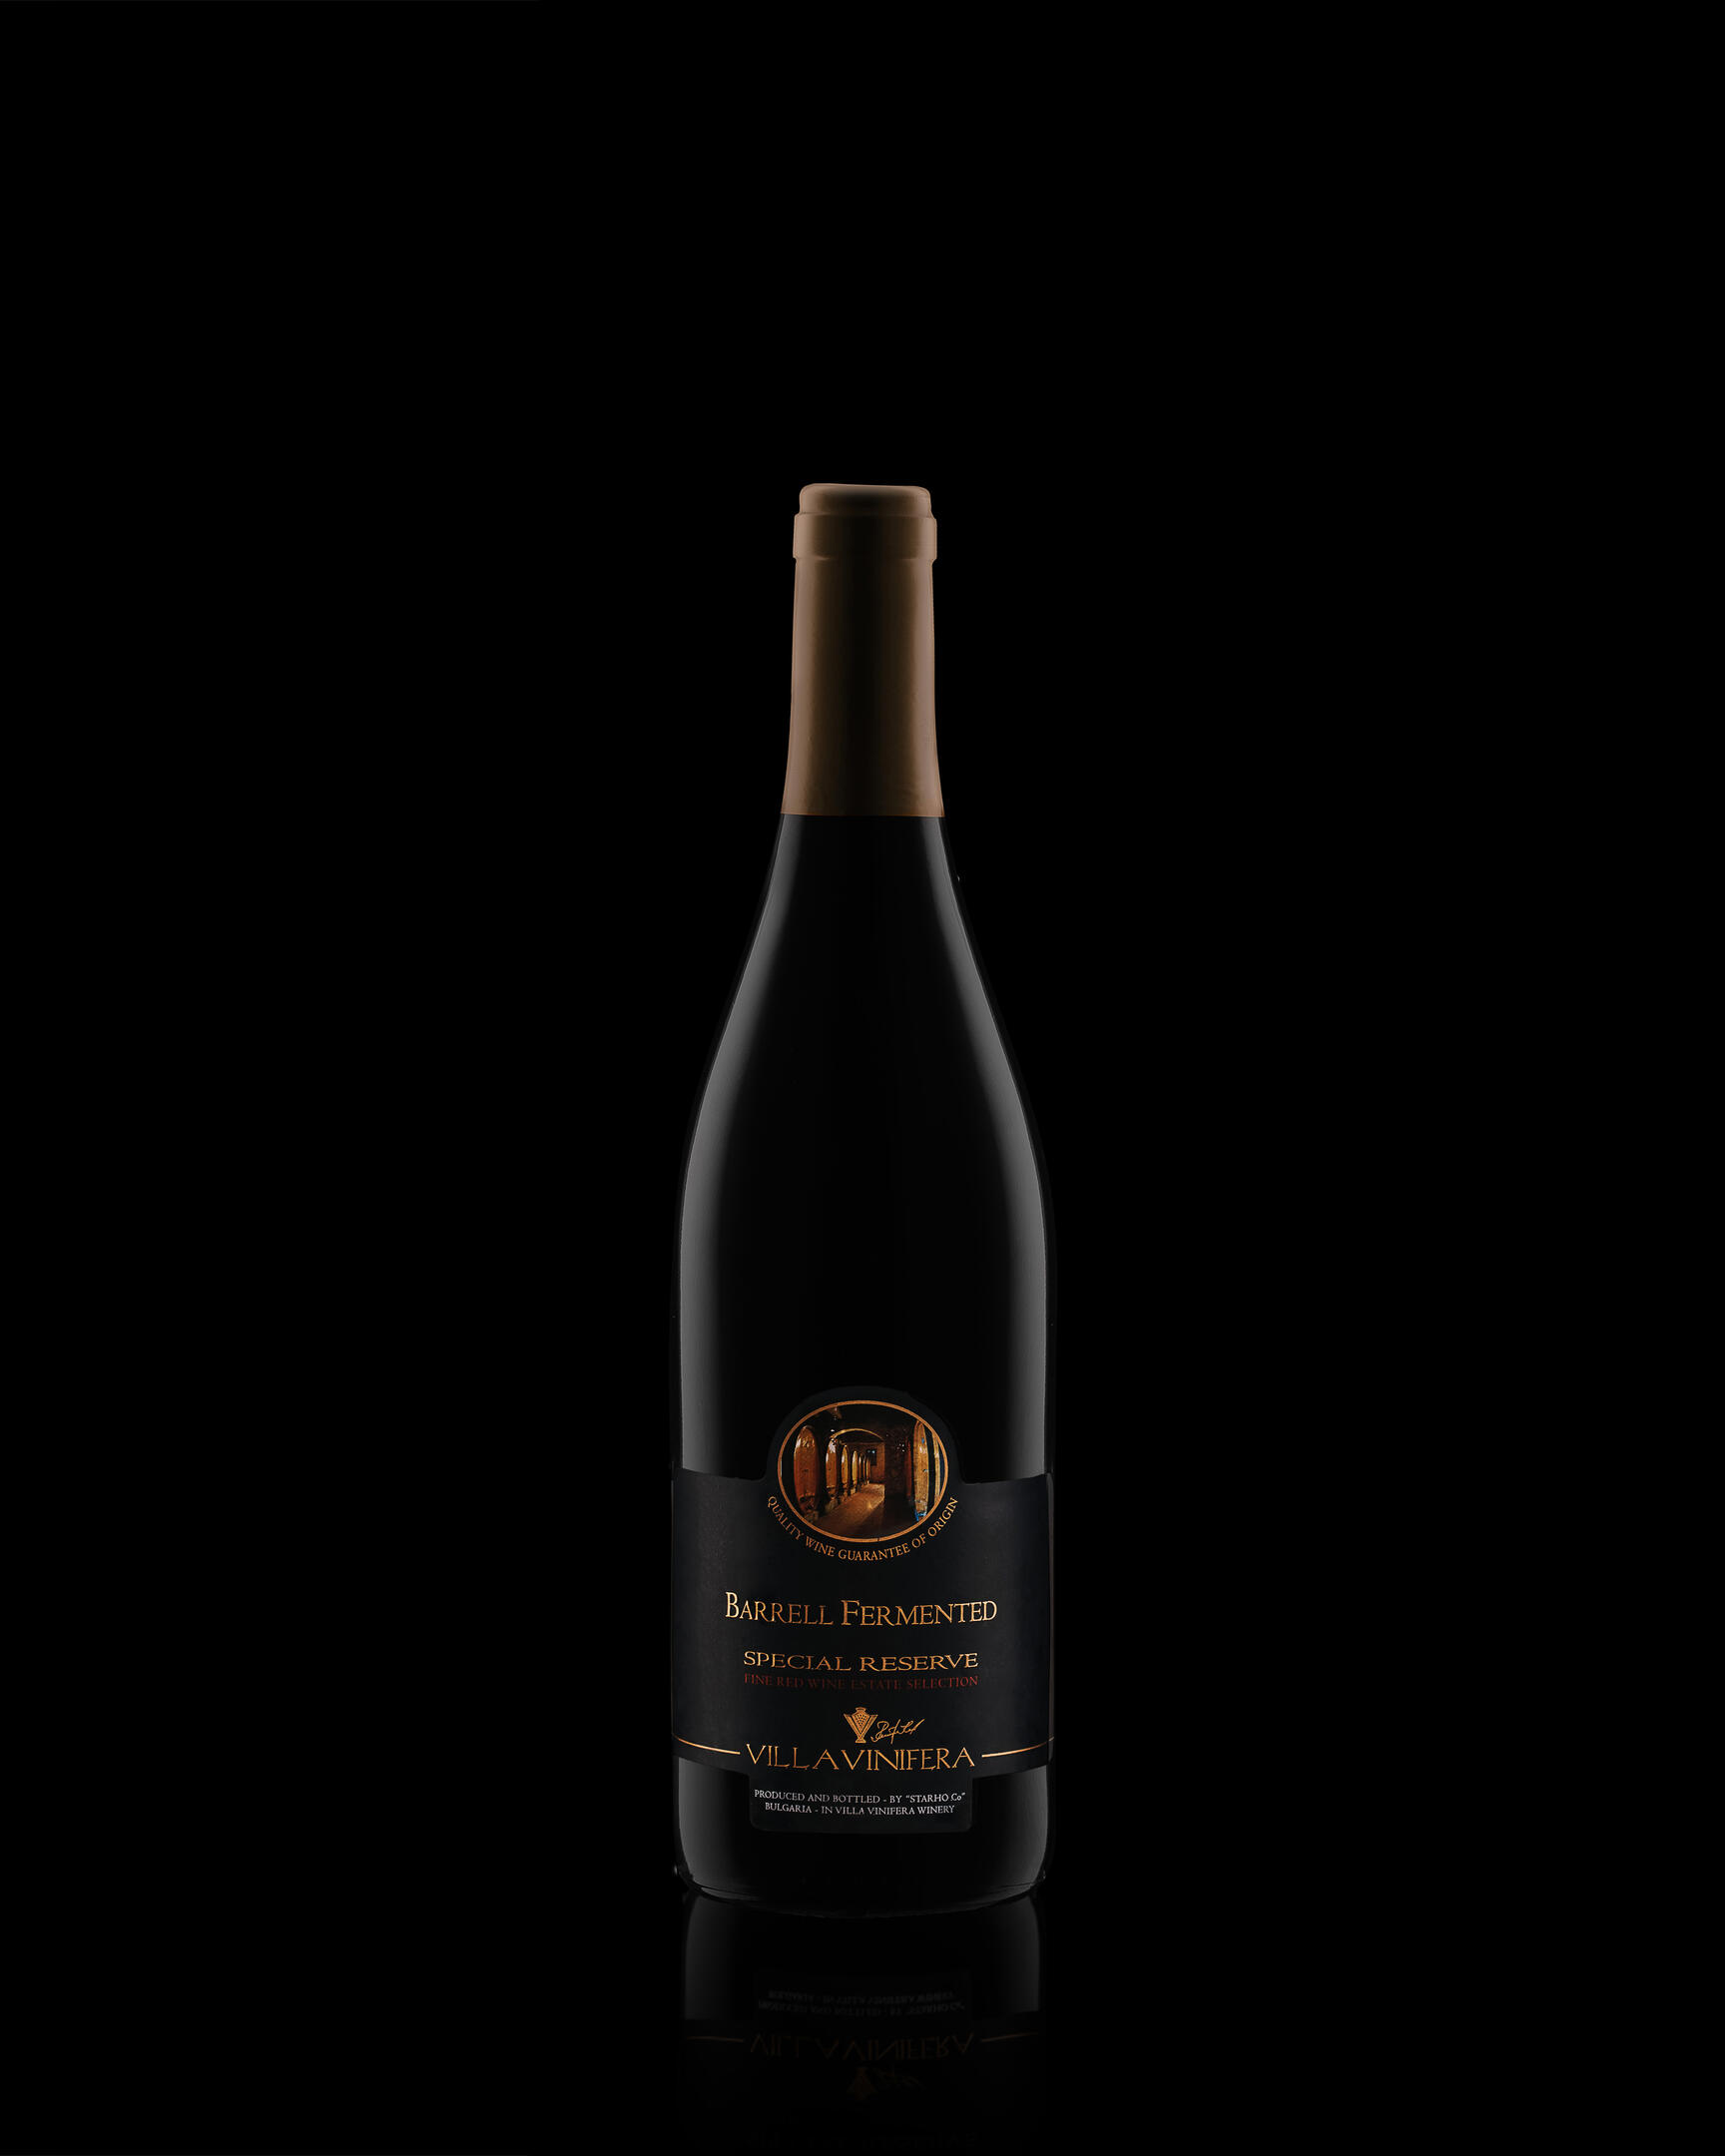 Бутилка варено ферментирало вино Special Reserve Villa Vinifera на тъмен фон. Бутилка Barrell Fermented Special Reserve вино Villa Vinifera на тъмен фон с меки отблясъци във формата на бутилката. Отражението се намира на дъното на бутилката.